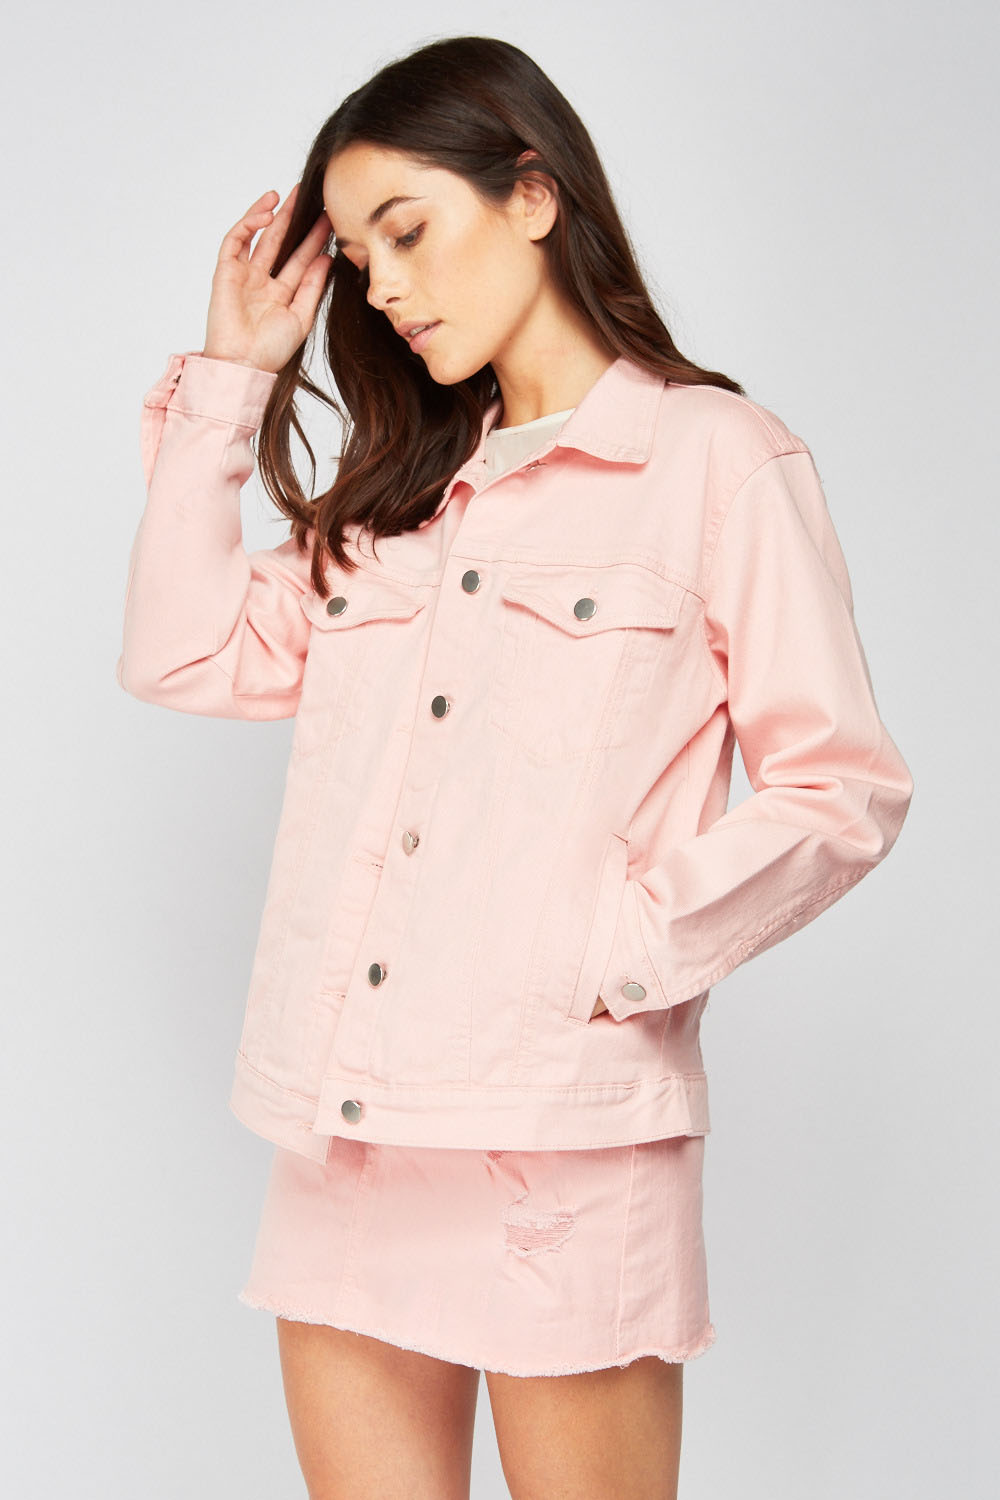 Light Pink Denim Jacket - Just $7